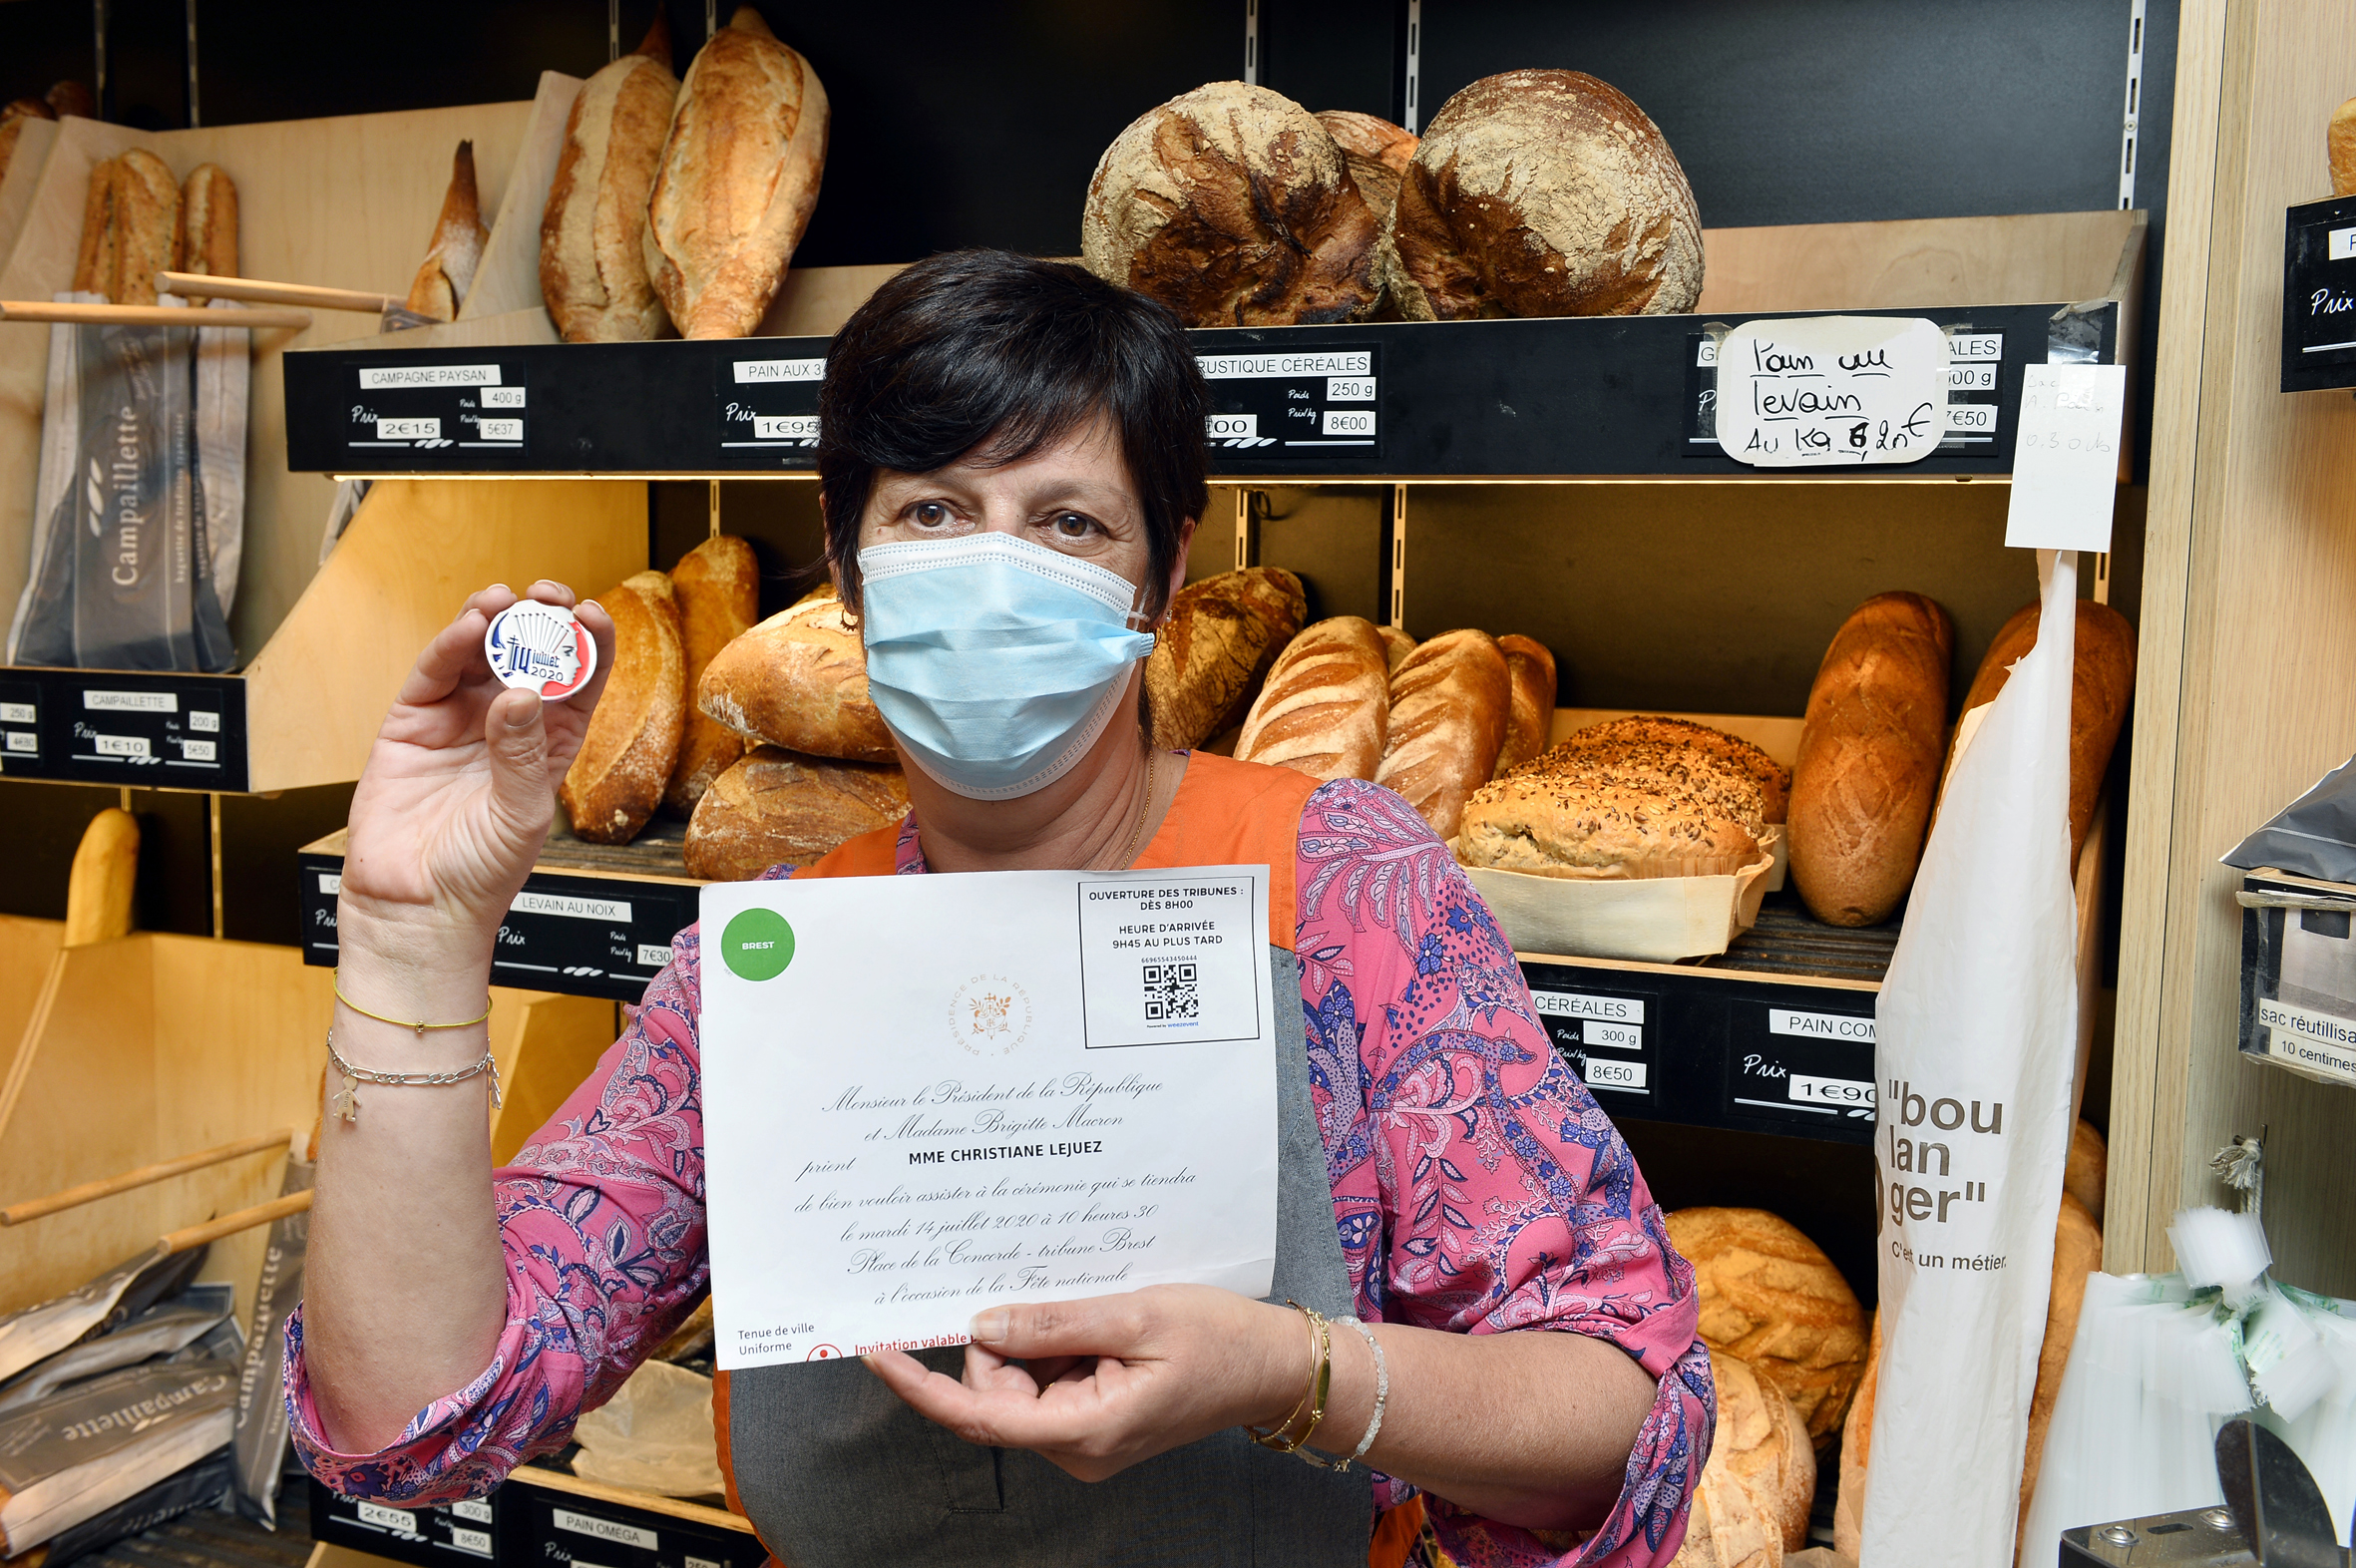 Christiane Lejuerz, une vendeuse en boulangerie reçue à l’Élysée